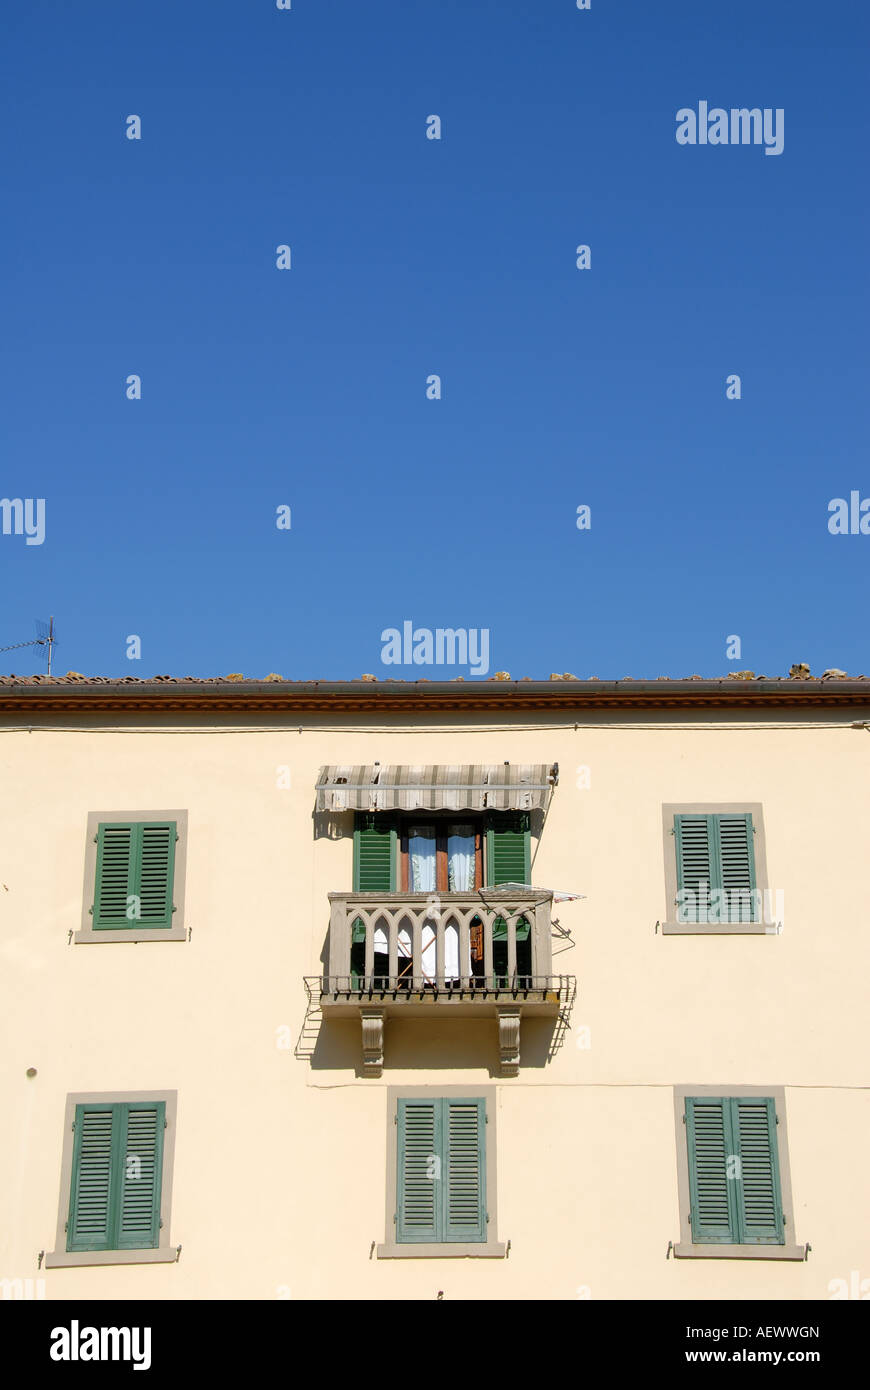 Typical architecture, Radda in Chianti Italy Stock Photo